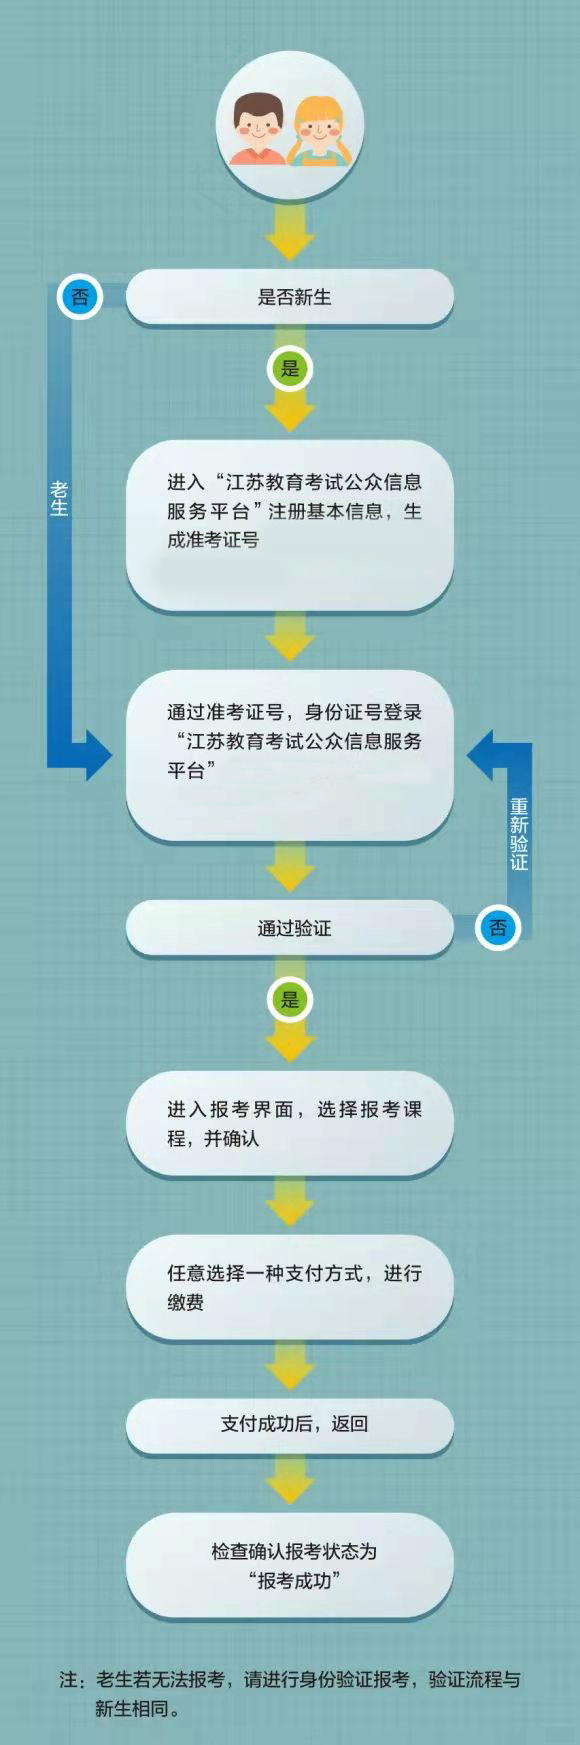 江苏省高等教育自学考试网上报名流程图(图1)